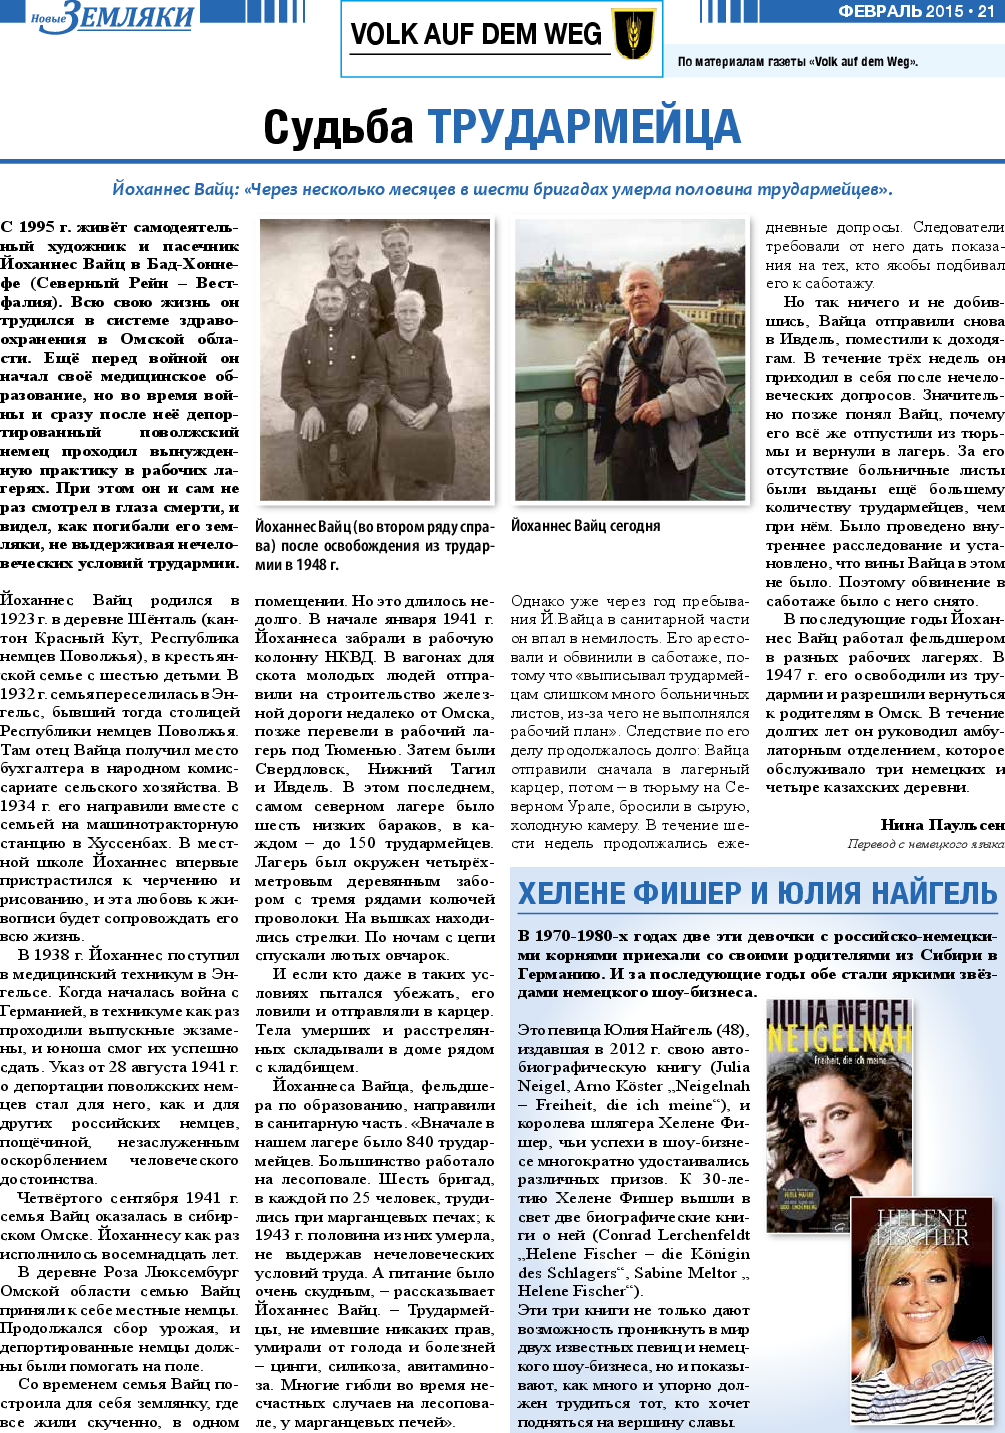 Новые Земляки, газета. 2015 №2 стр.21